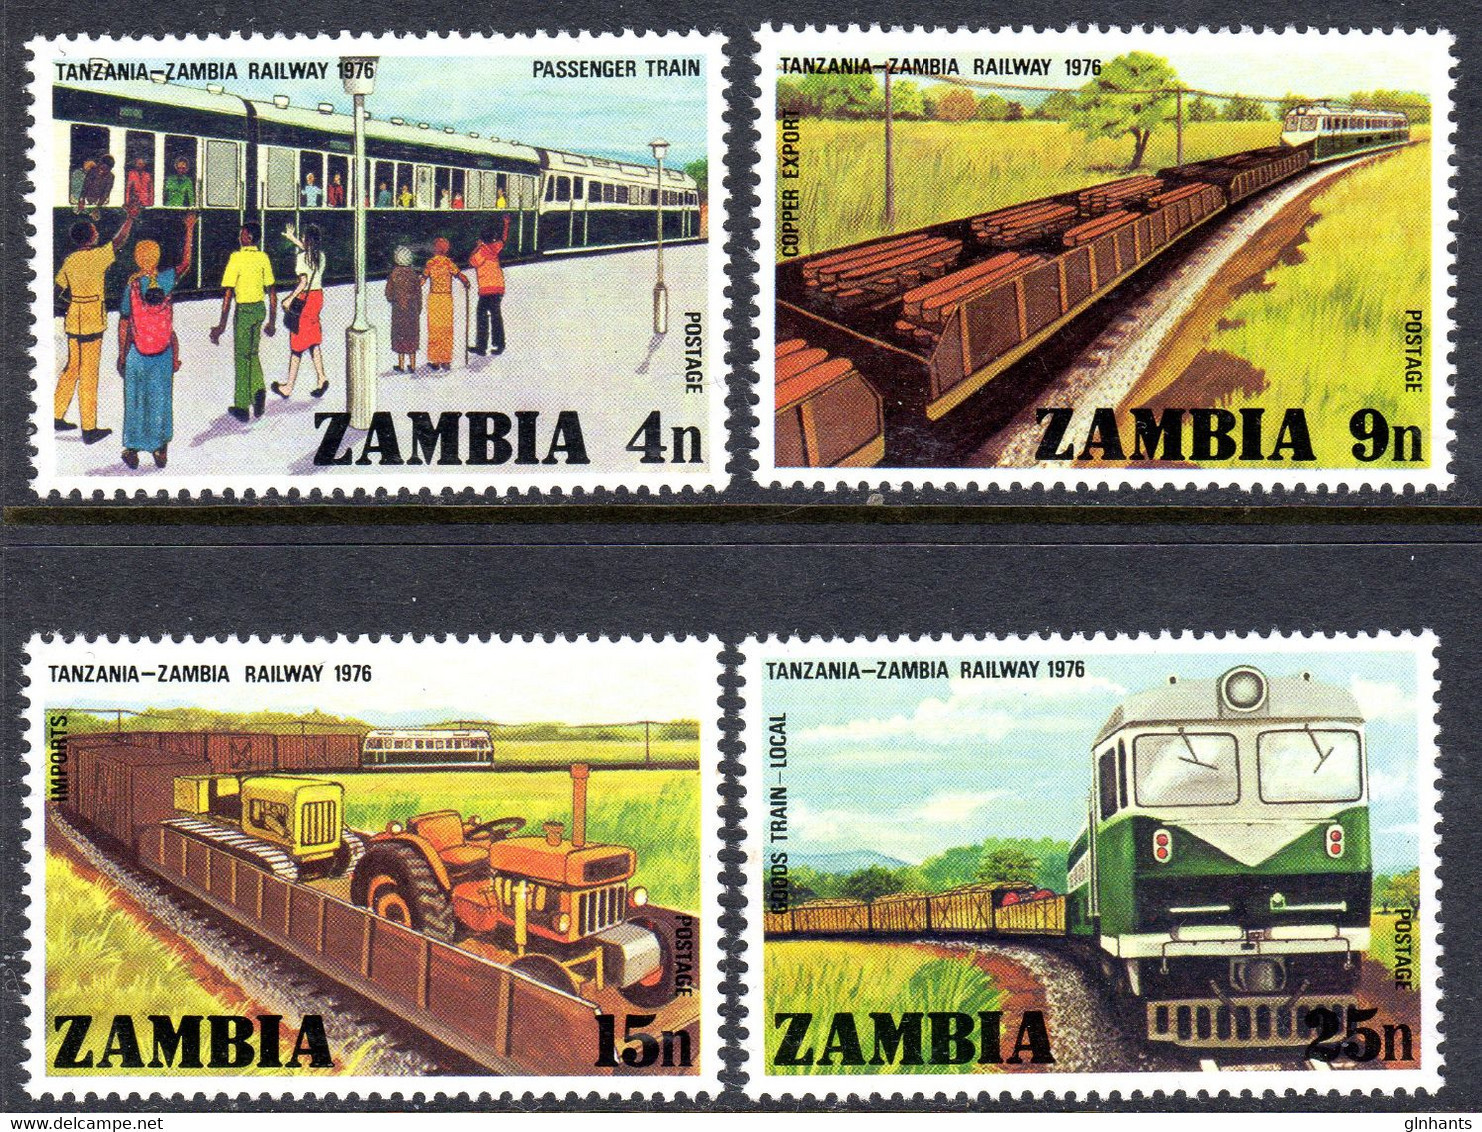 ZAMBIA - 1976 RAILWAY OPENING SET (4V) FINE MNH ** SG 253-256 - Zambie (1965-...)